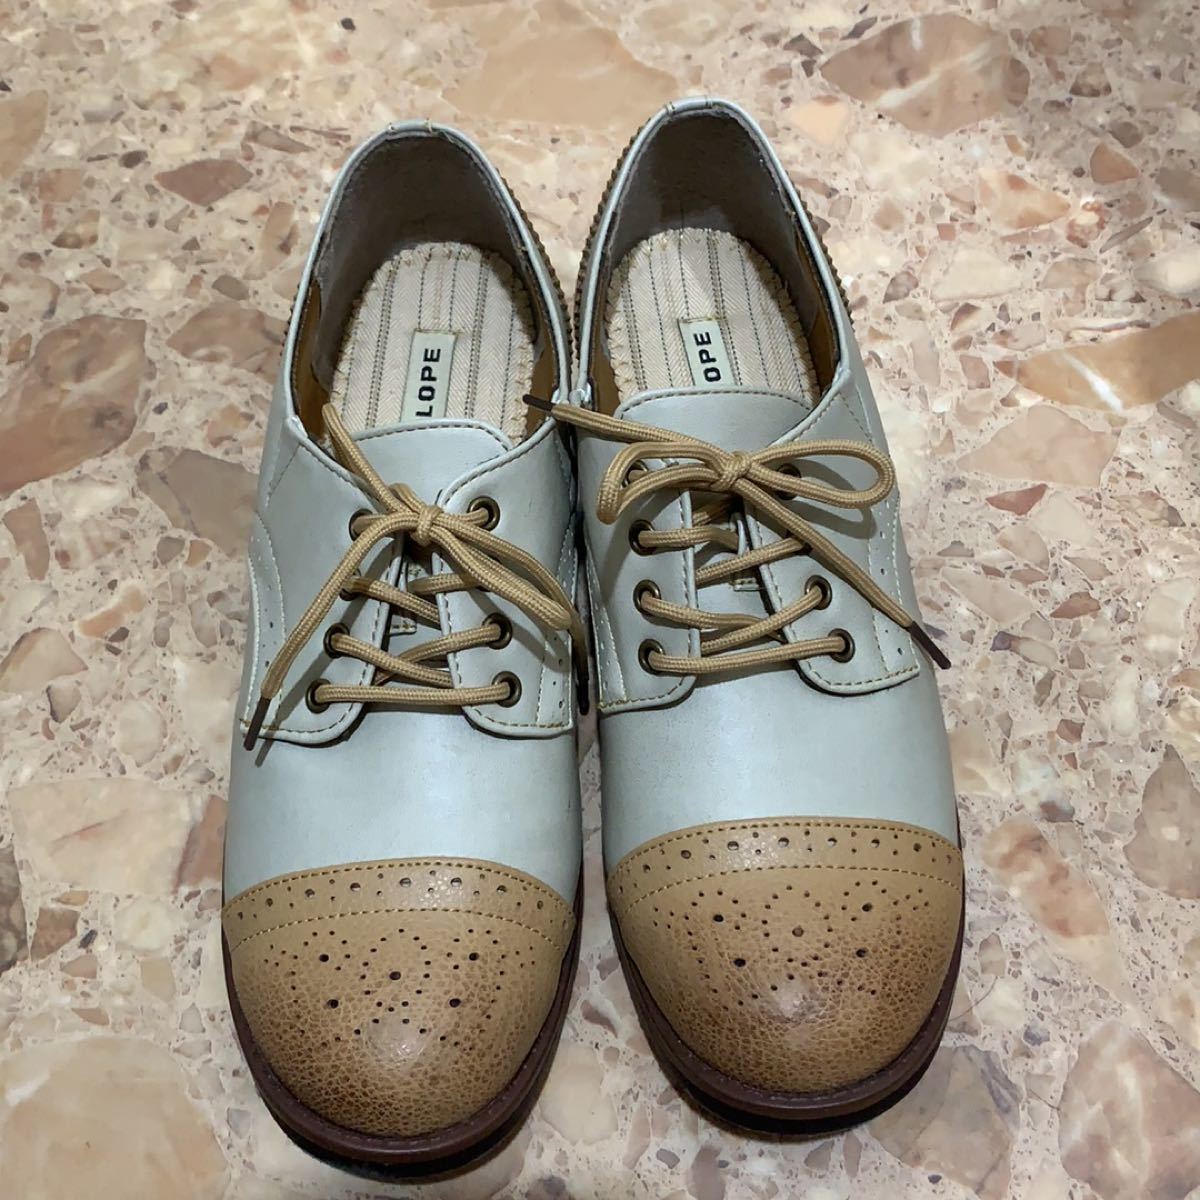 オックスフォード・シューズ シューズ 靴 レディース 紐靴 ほぼ未使用 美品 綺麗 量産 夢 Ateliers Penelope 